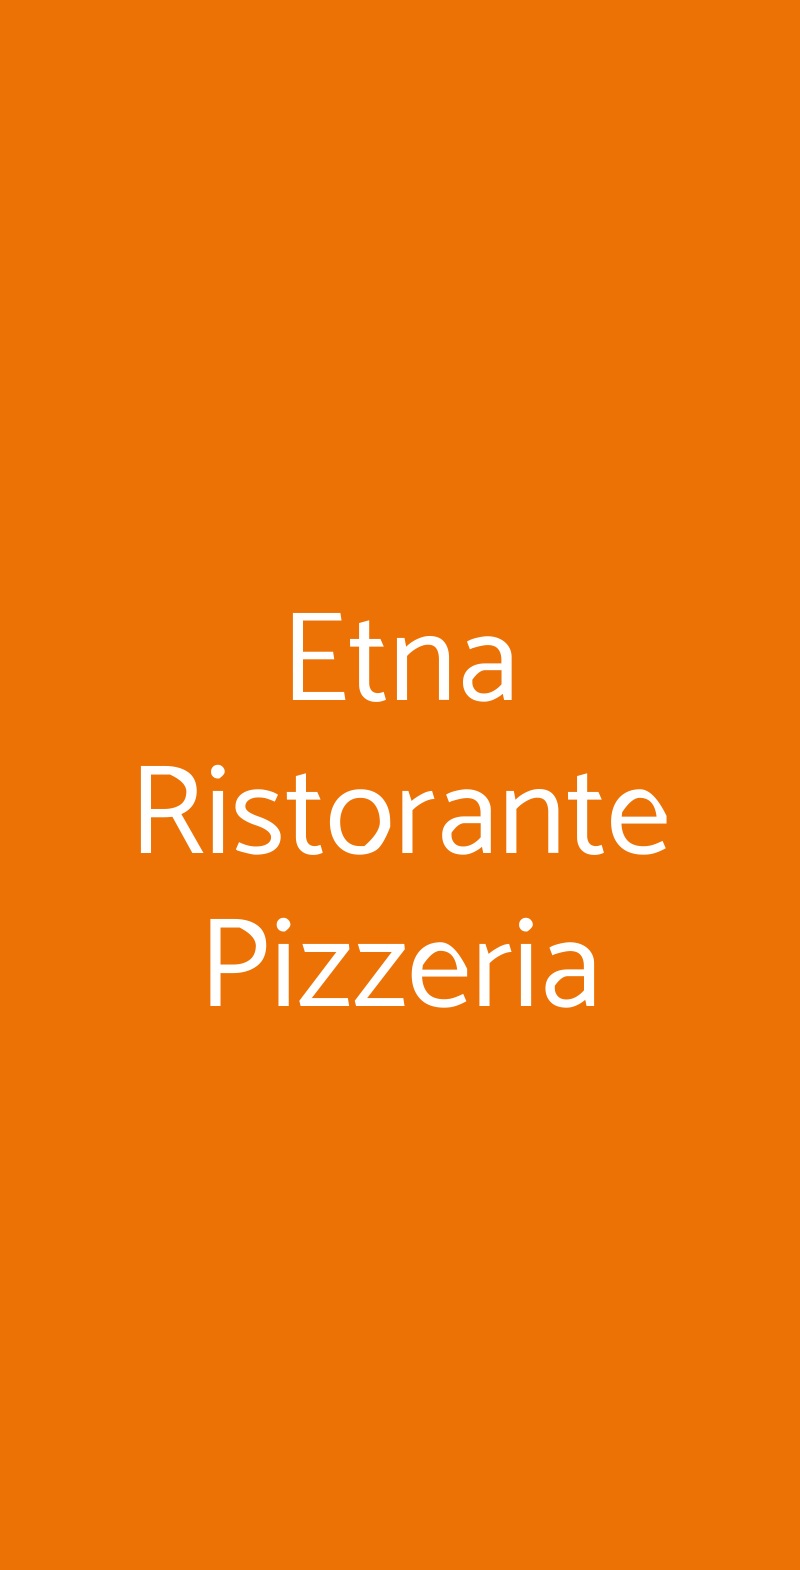 Etna Ristorante Pizzeria Taormina menù 1 pagina